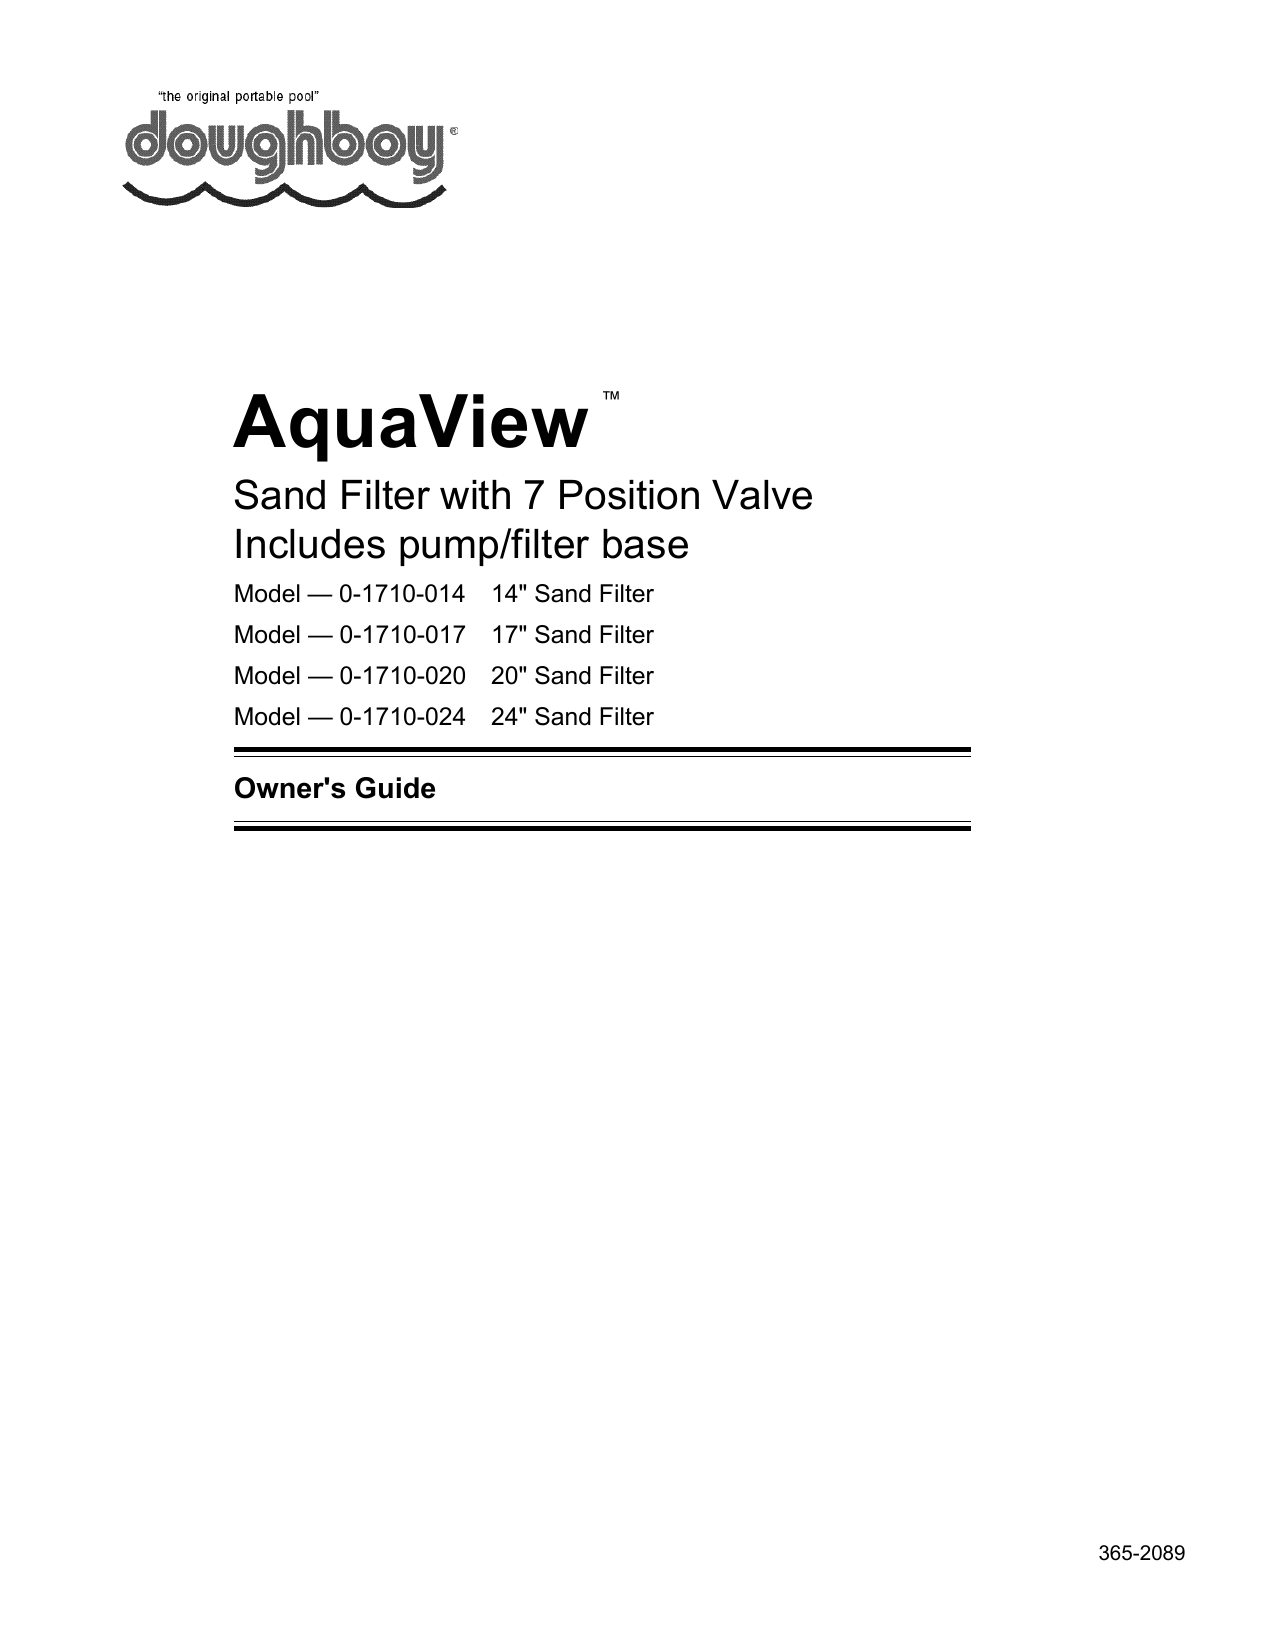 doughboy aqua view manual